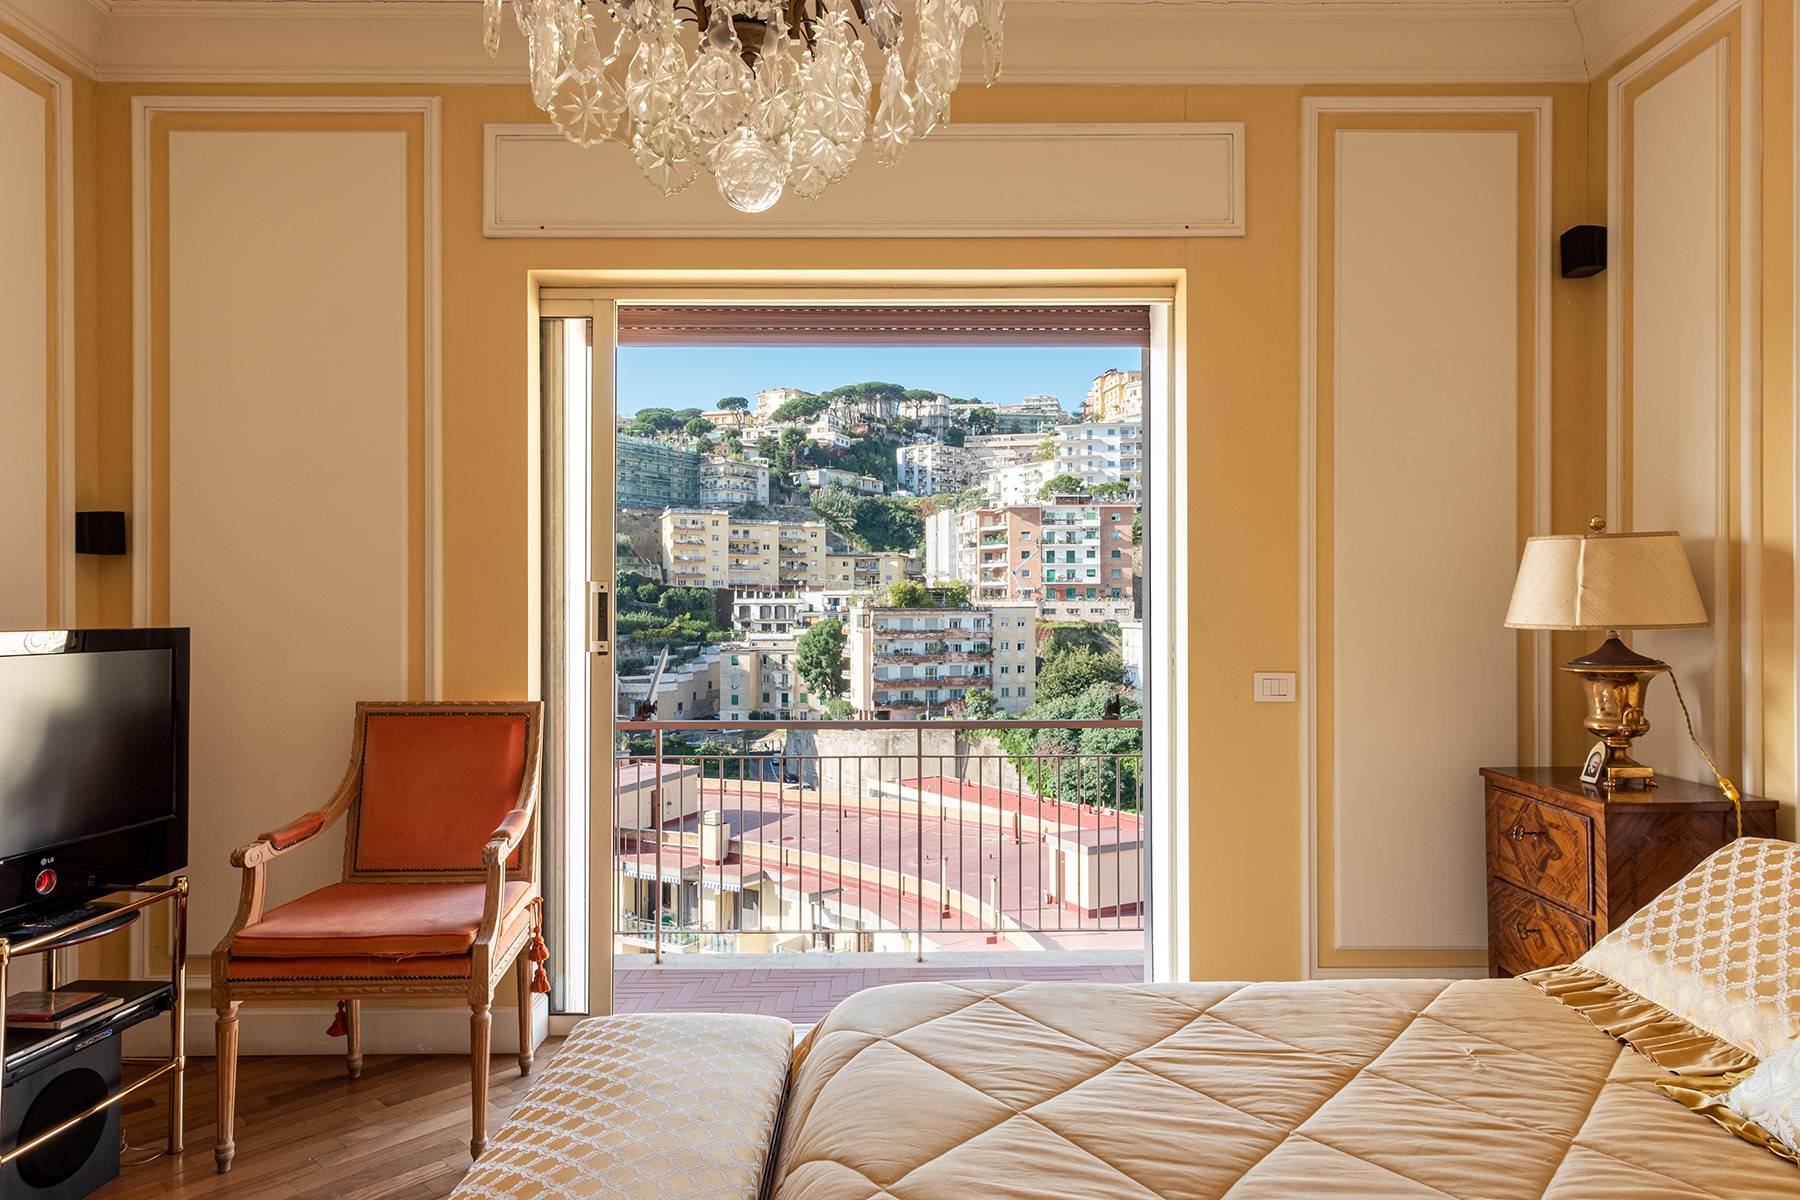 Appartamento in Vendita a Napoli: 5 locali, 350 mq - Foto 12